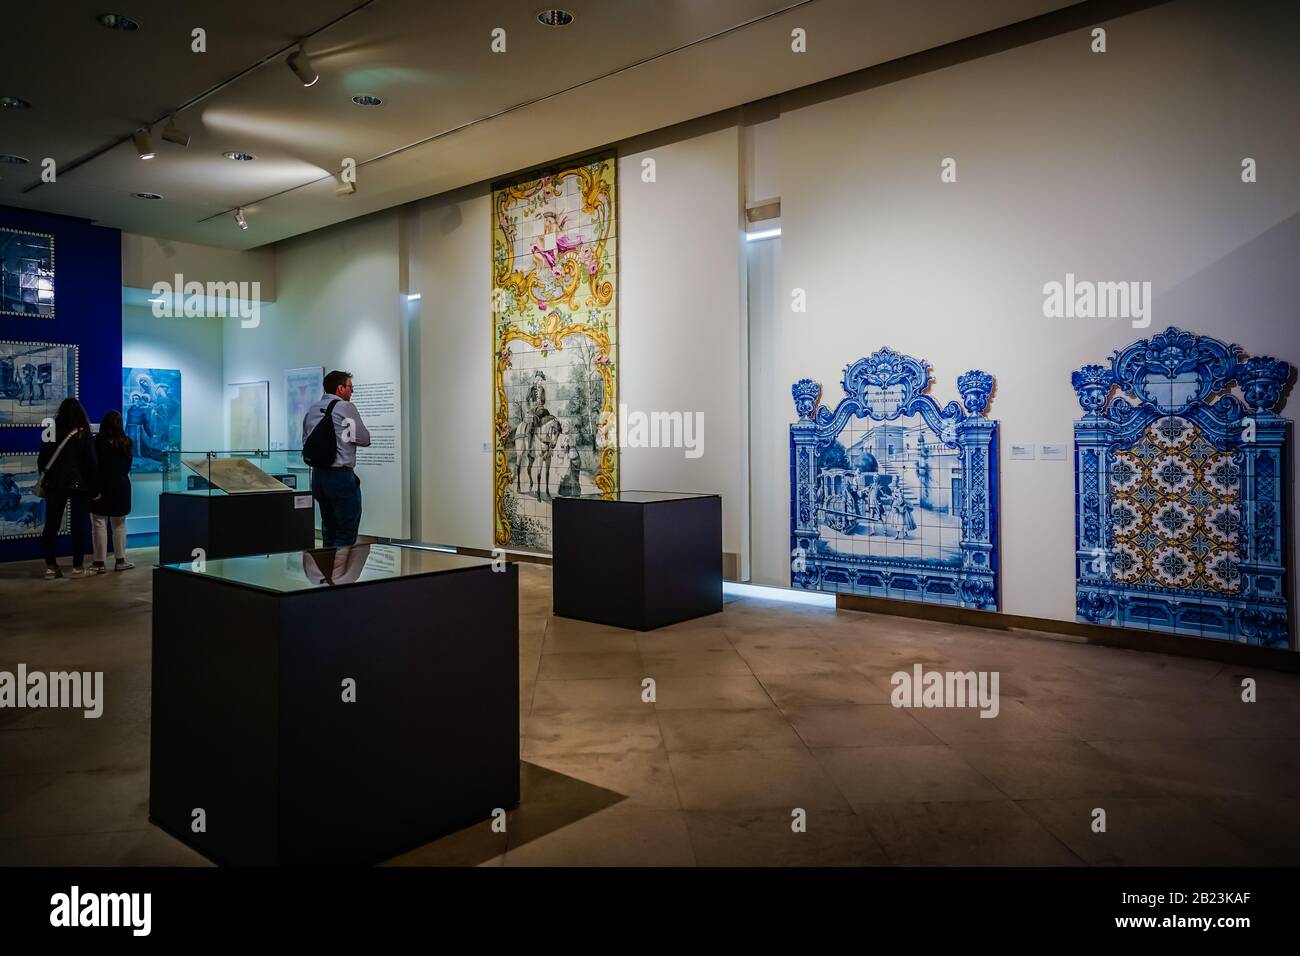 Eine Galerie mit gefliesten Arbeiten von Jorge Rey Colaco im Museum Nacional do Azulejo (Nationales Fliesenmuseum) ist ein berühmtes Kultur- und Kunstmuseum in Lissabon Portu Stockfoto